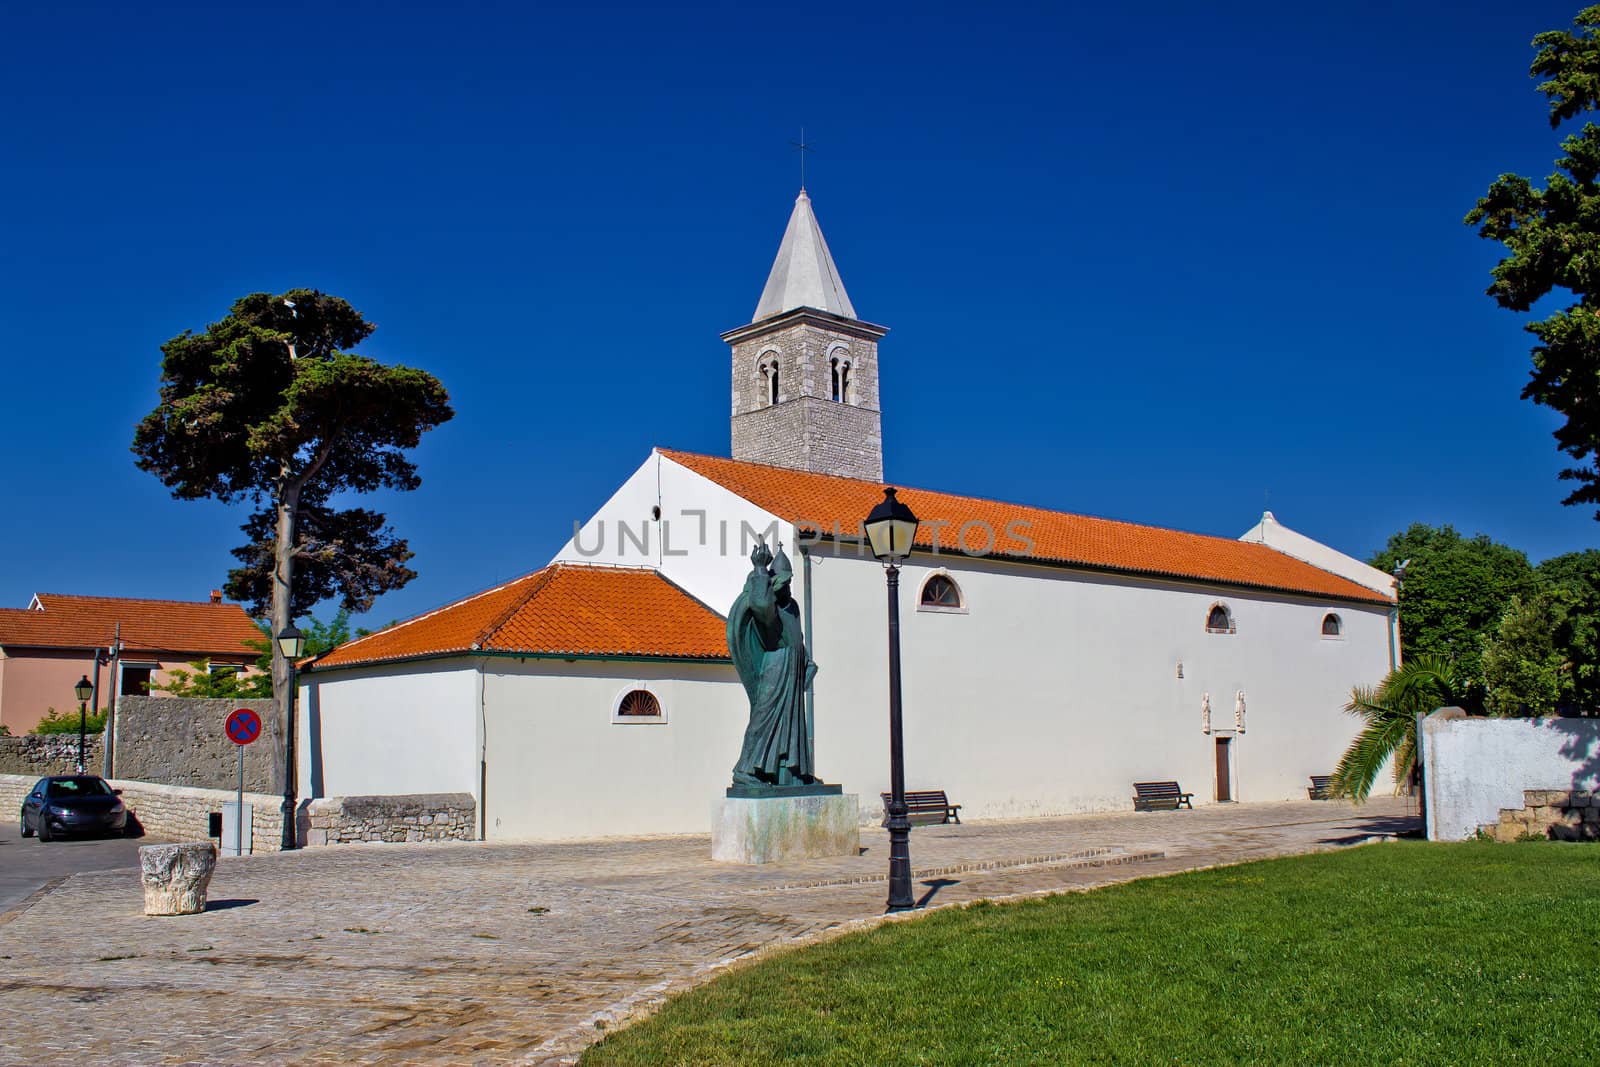 Town of Nin church and square, Dalamtia, Croatia